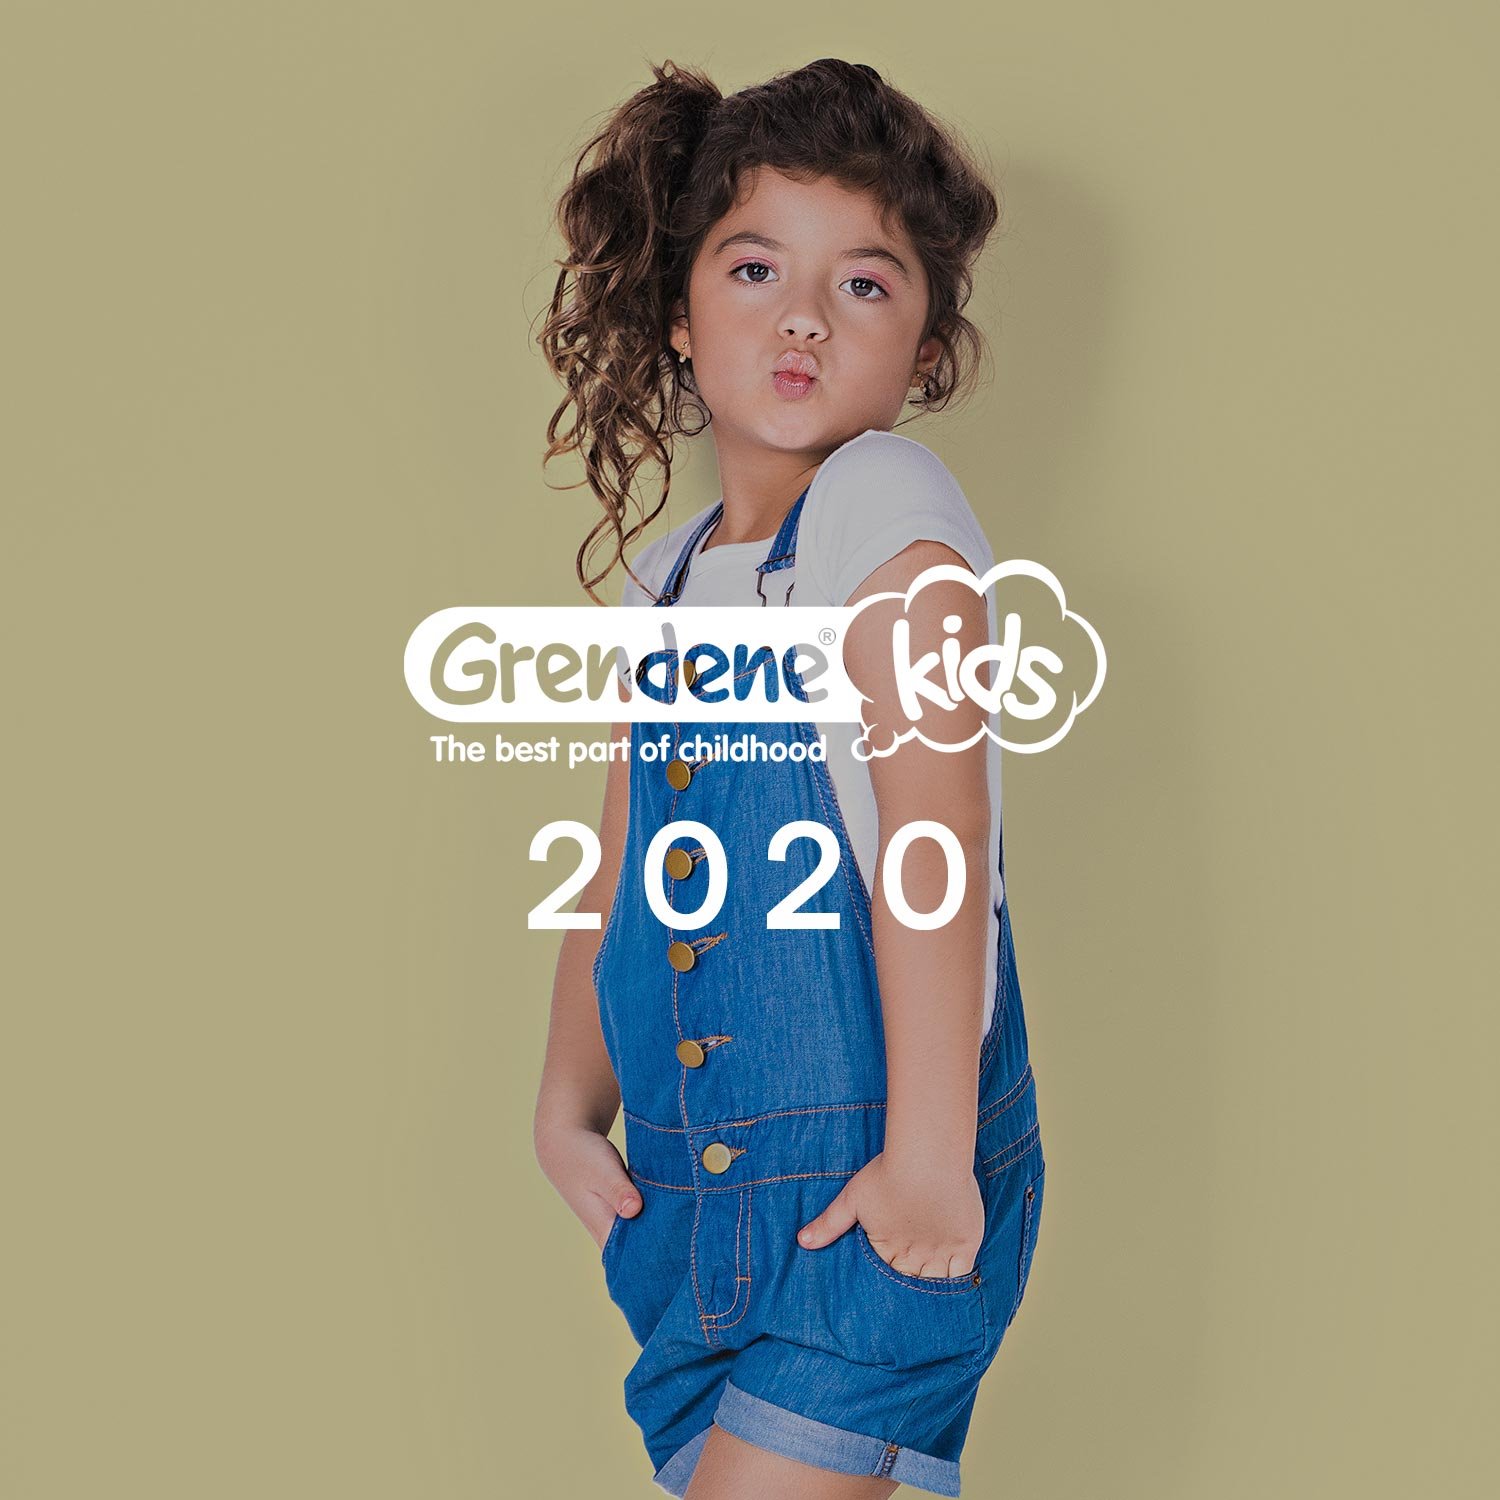 GRENDENE KIDS 2020